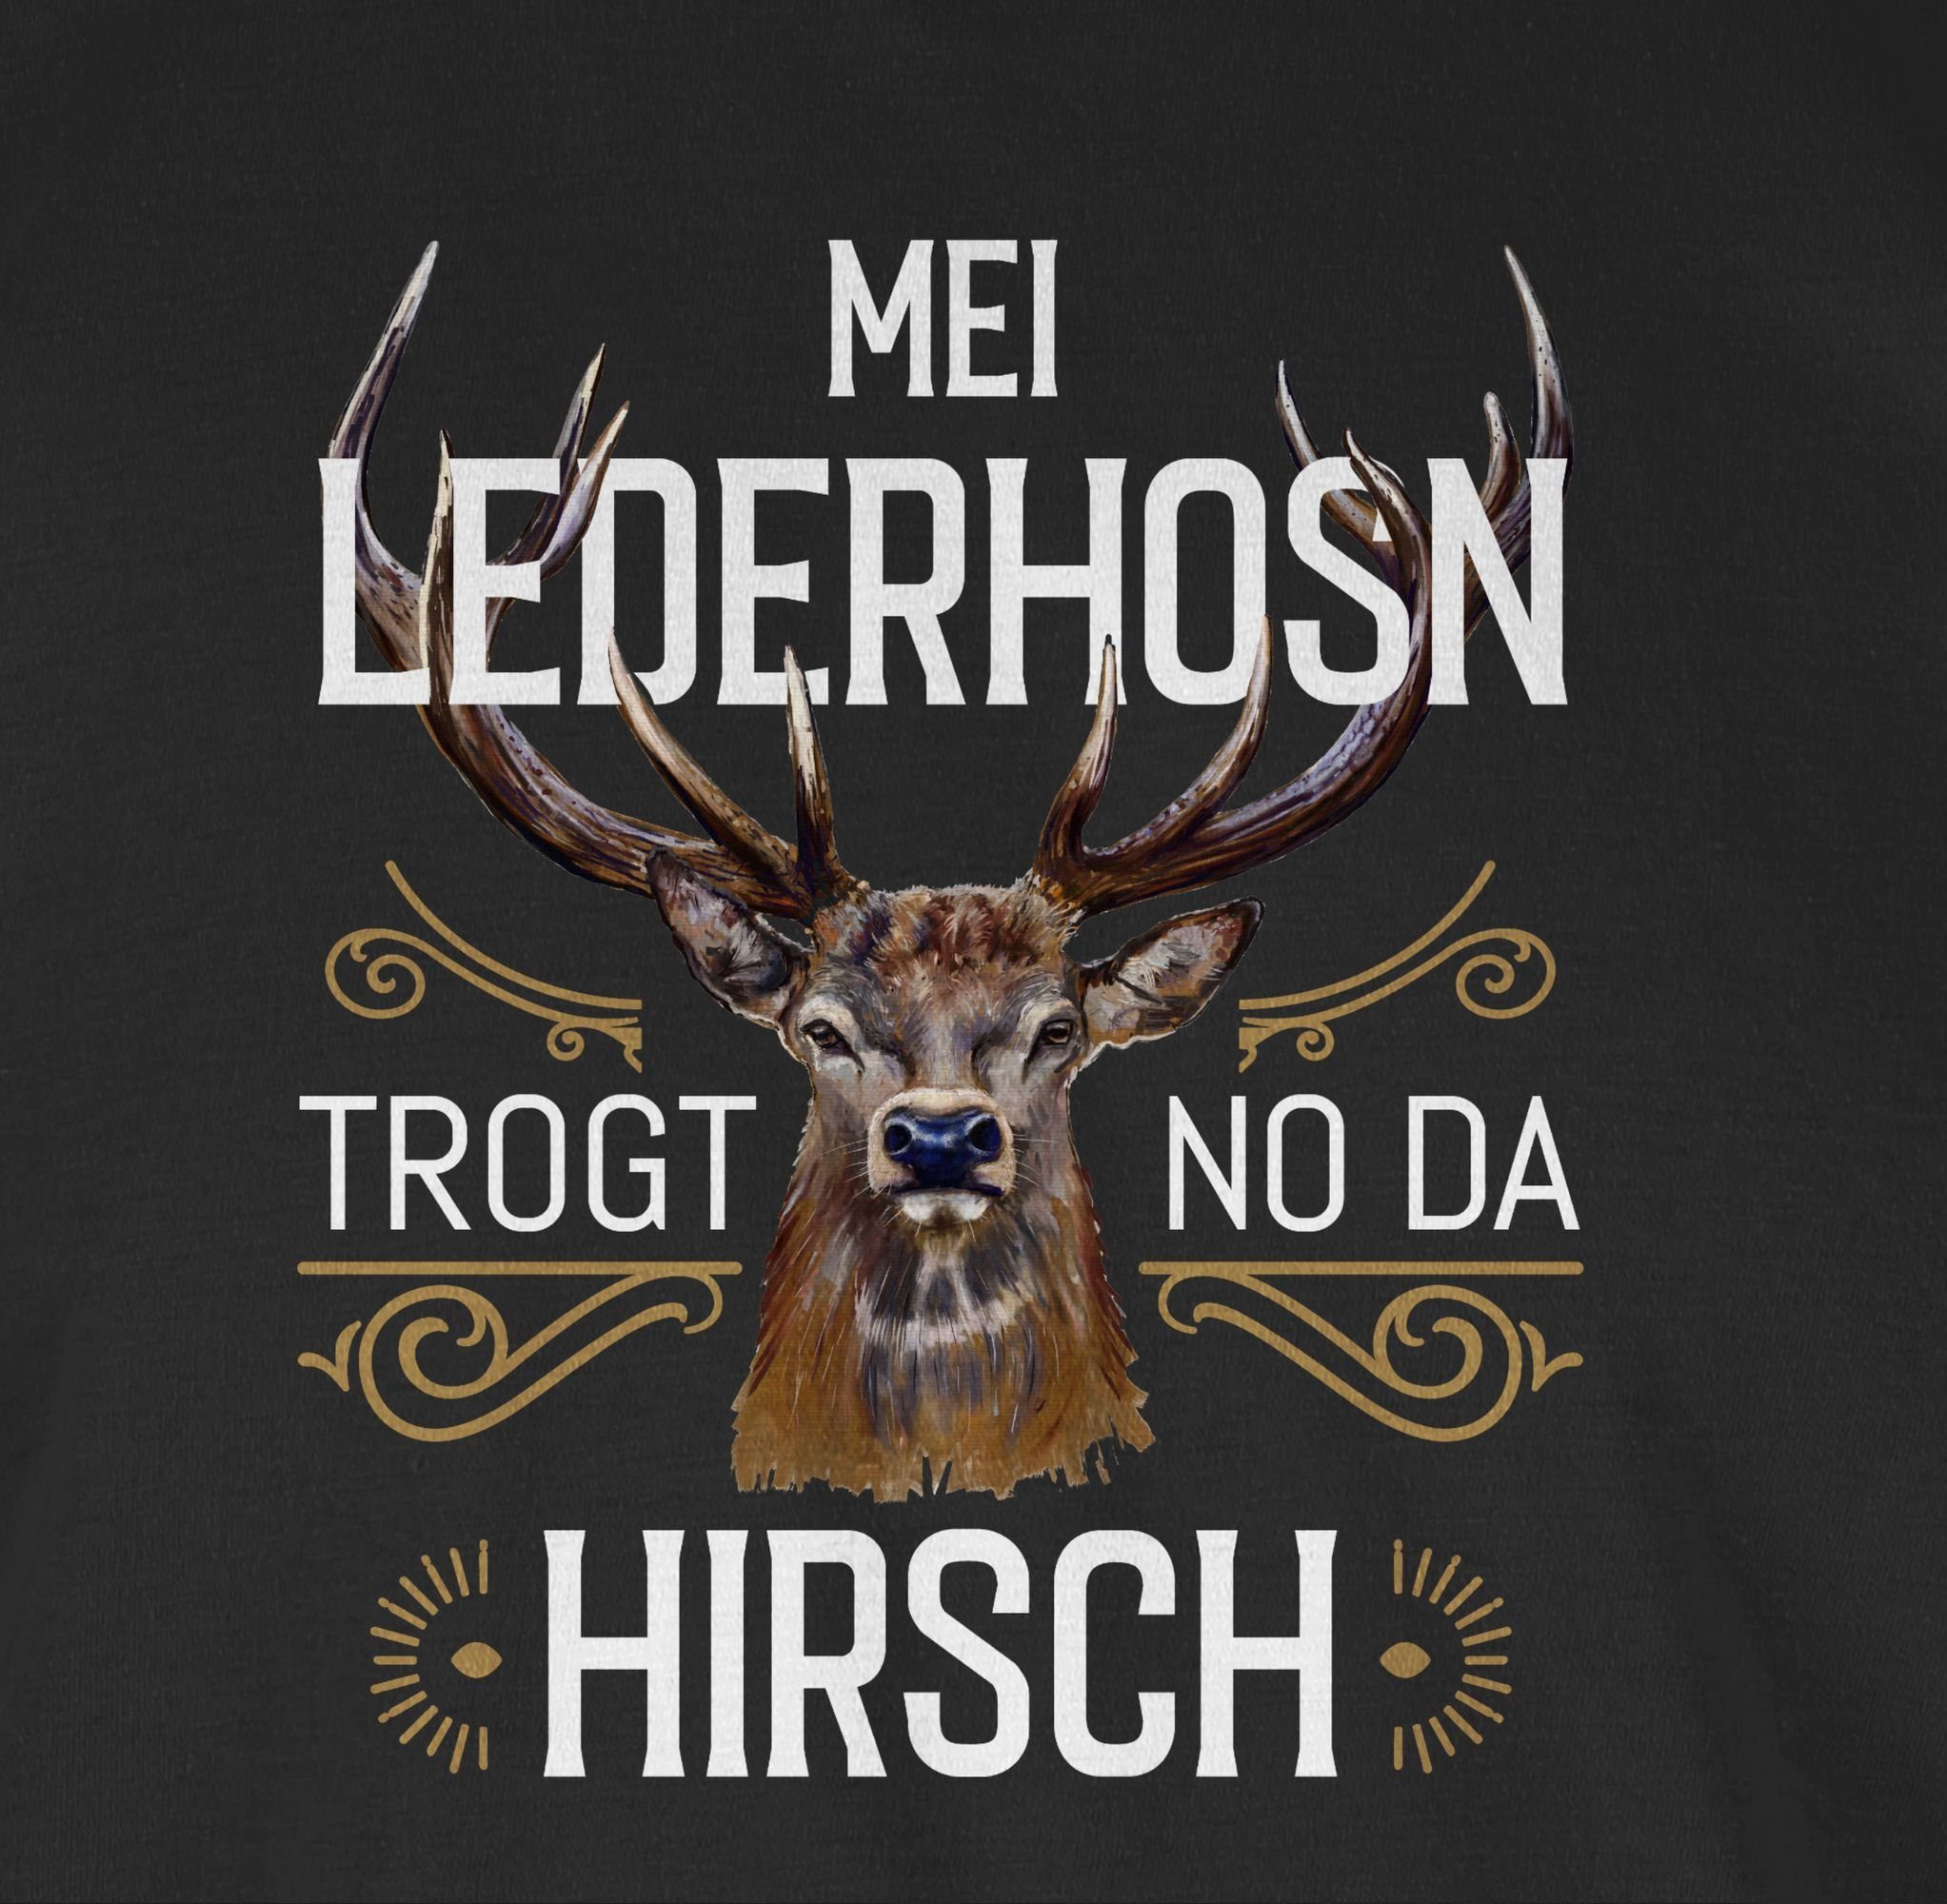 Herren Oktoberfest Mode da Hirsch trogt für braun weiß T-Shirt Shirtracer no - Schwarz Mei 01 Lederhosn